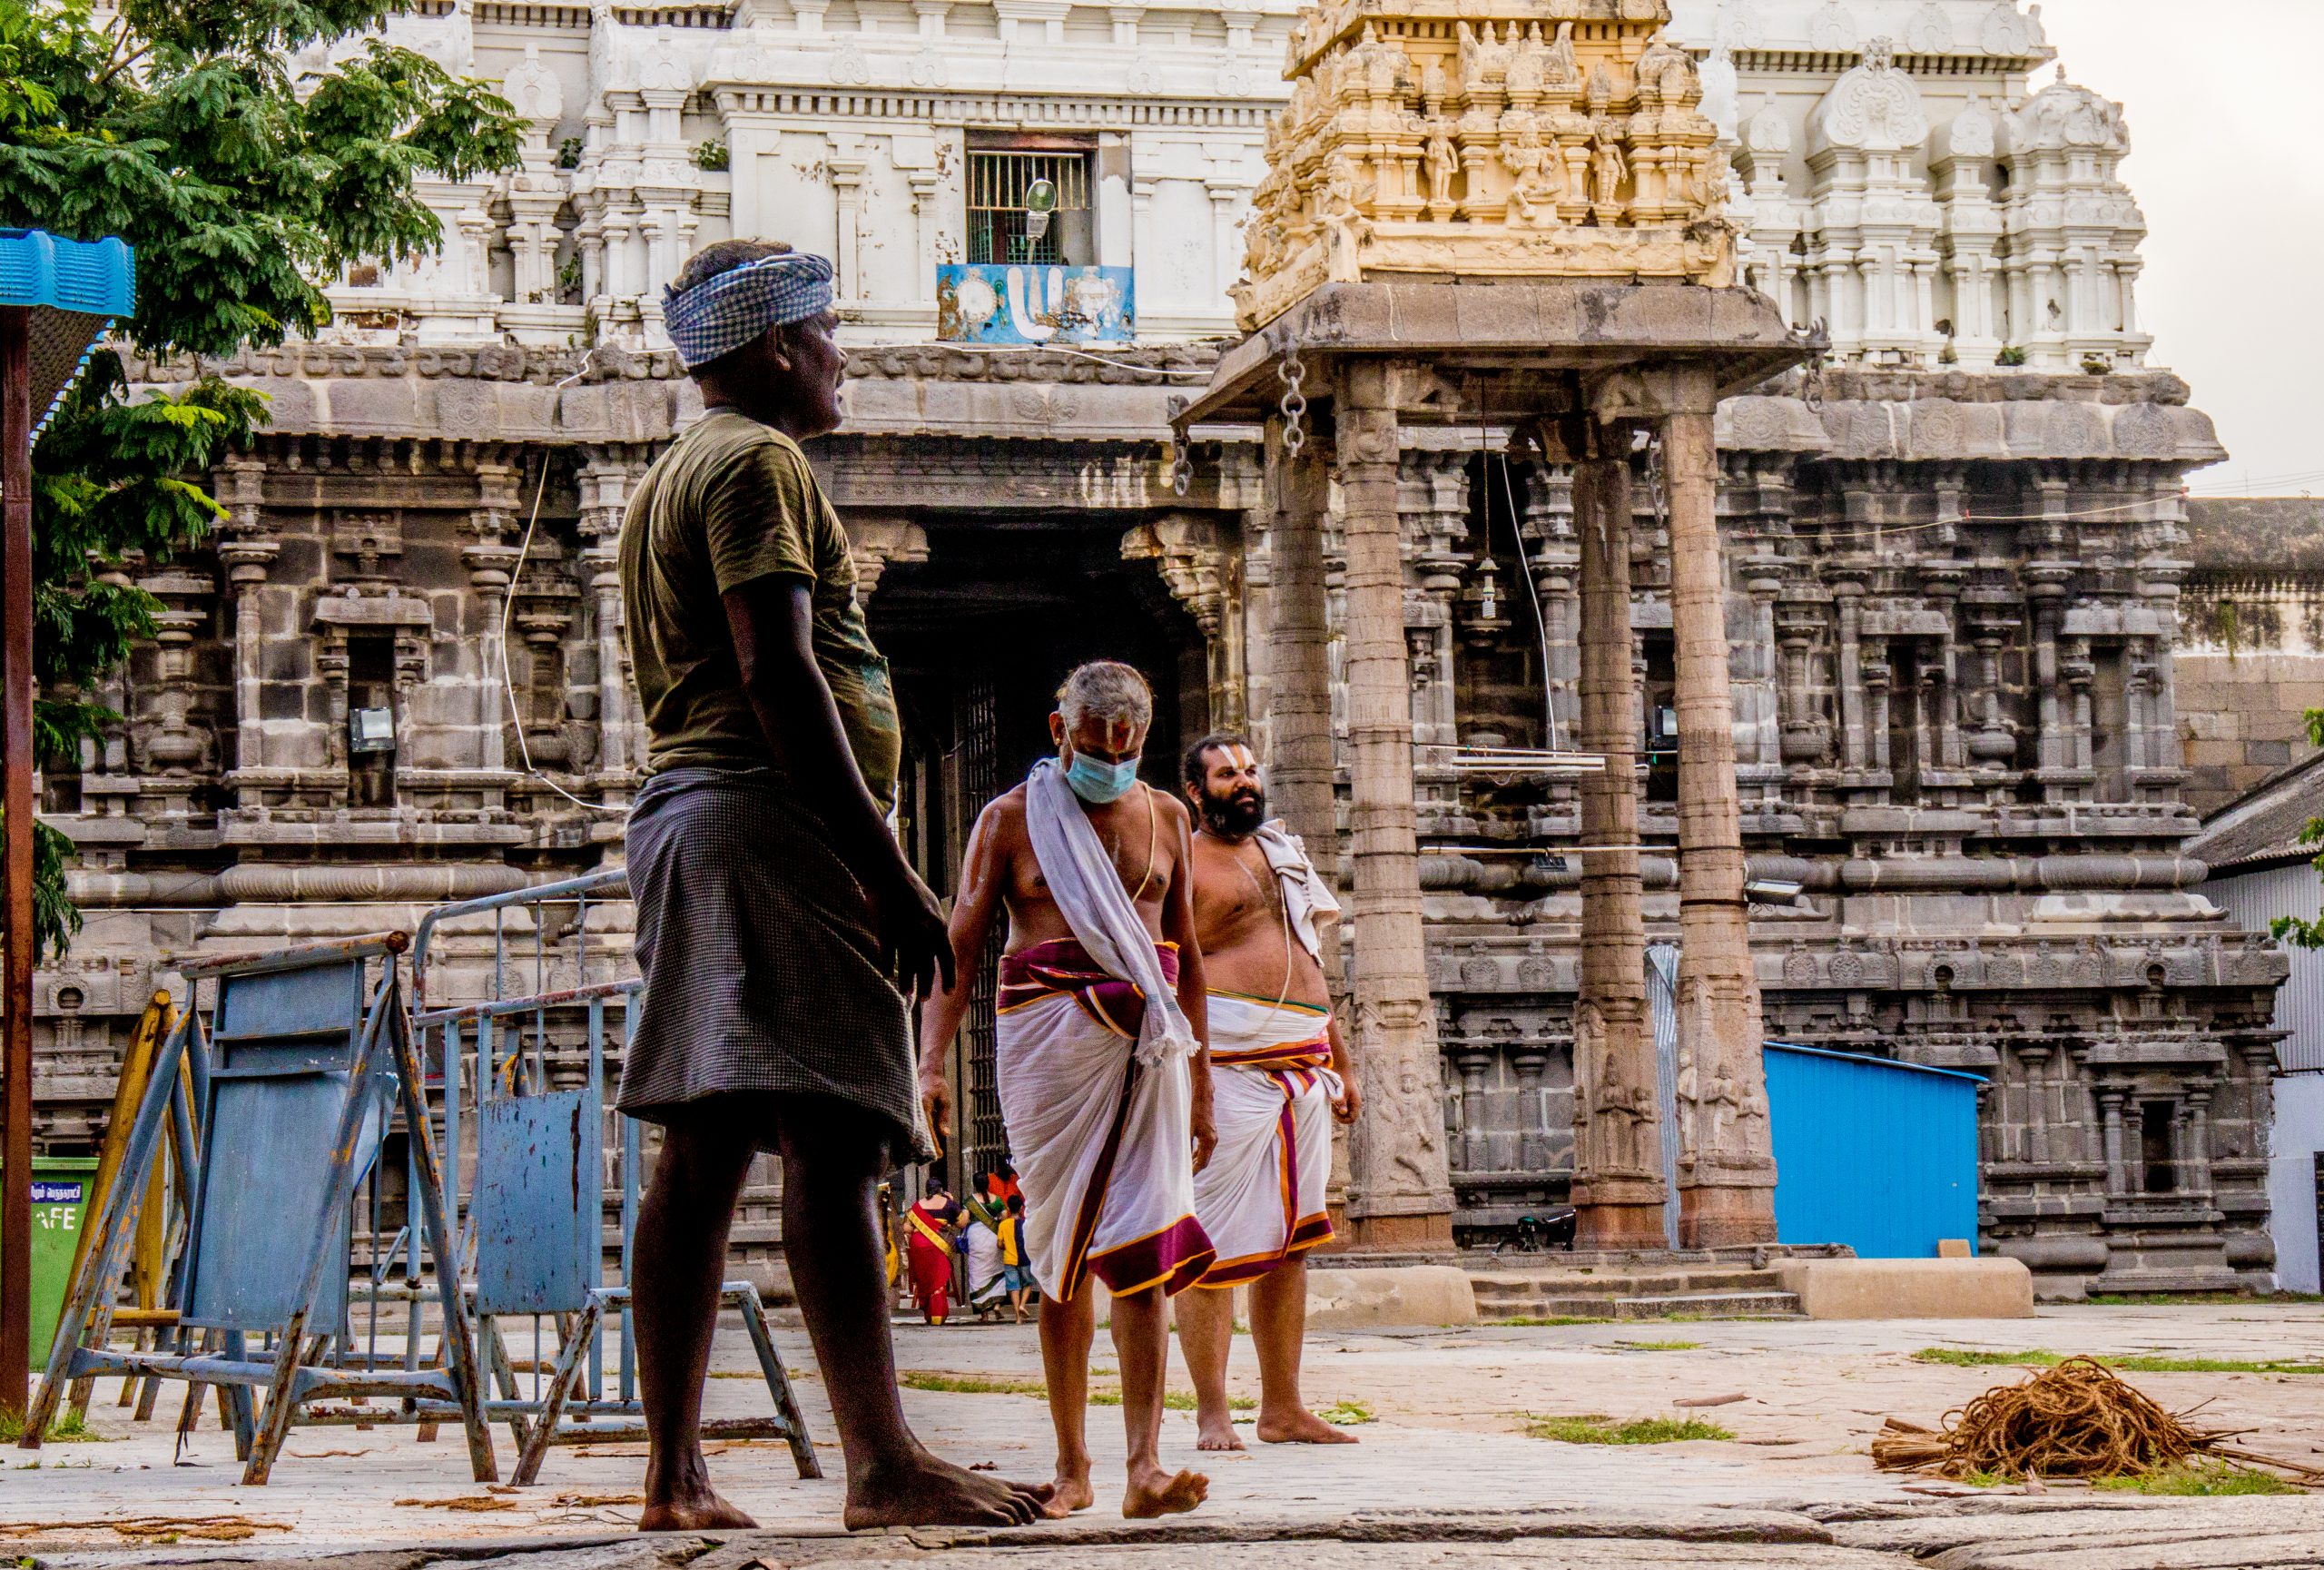 Sant outside temple